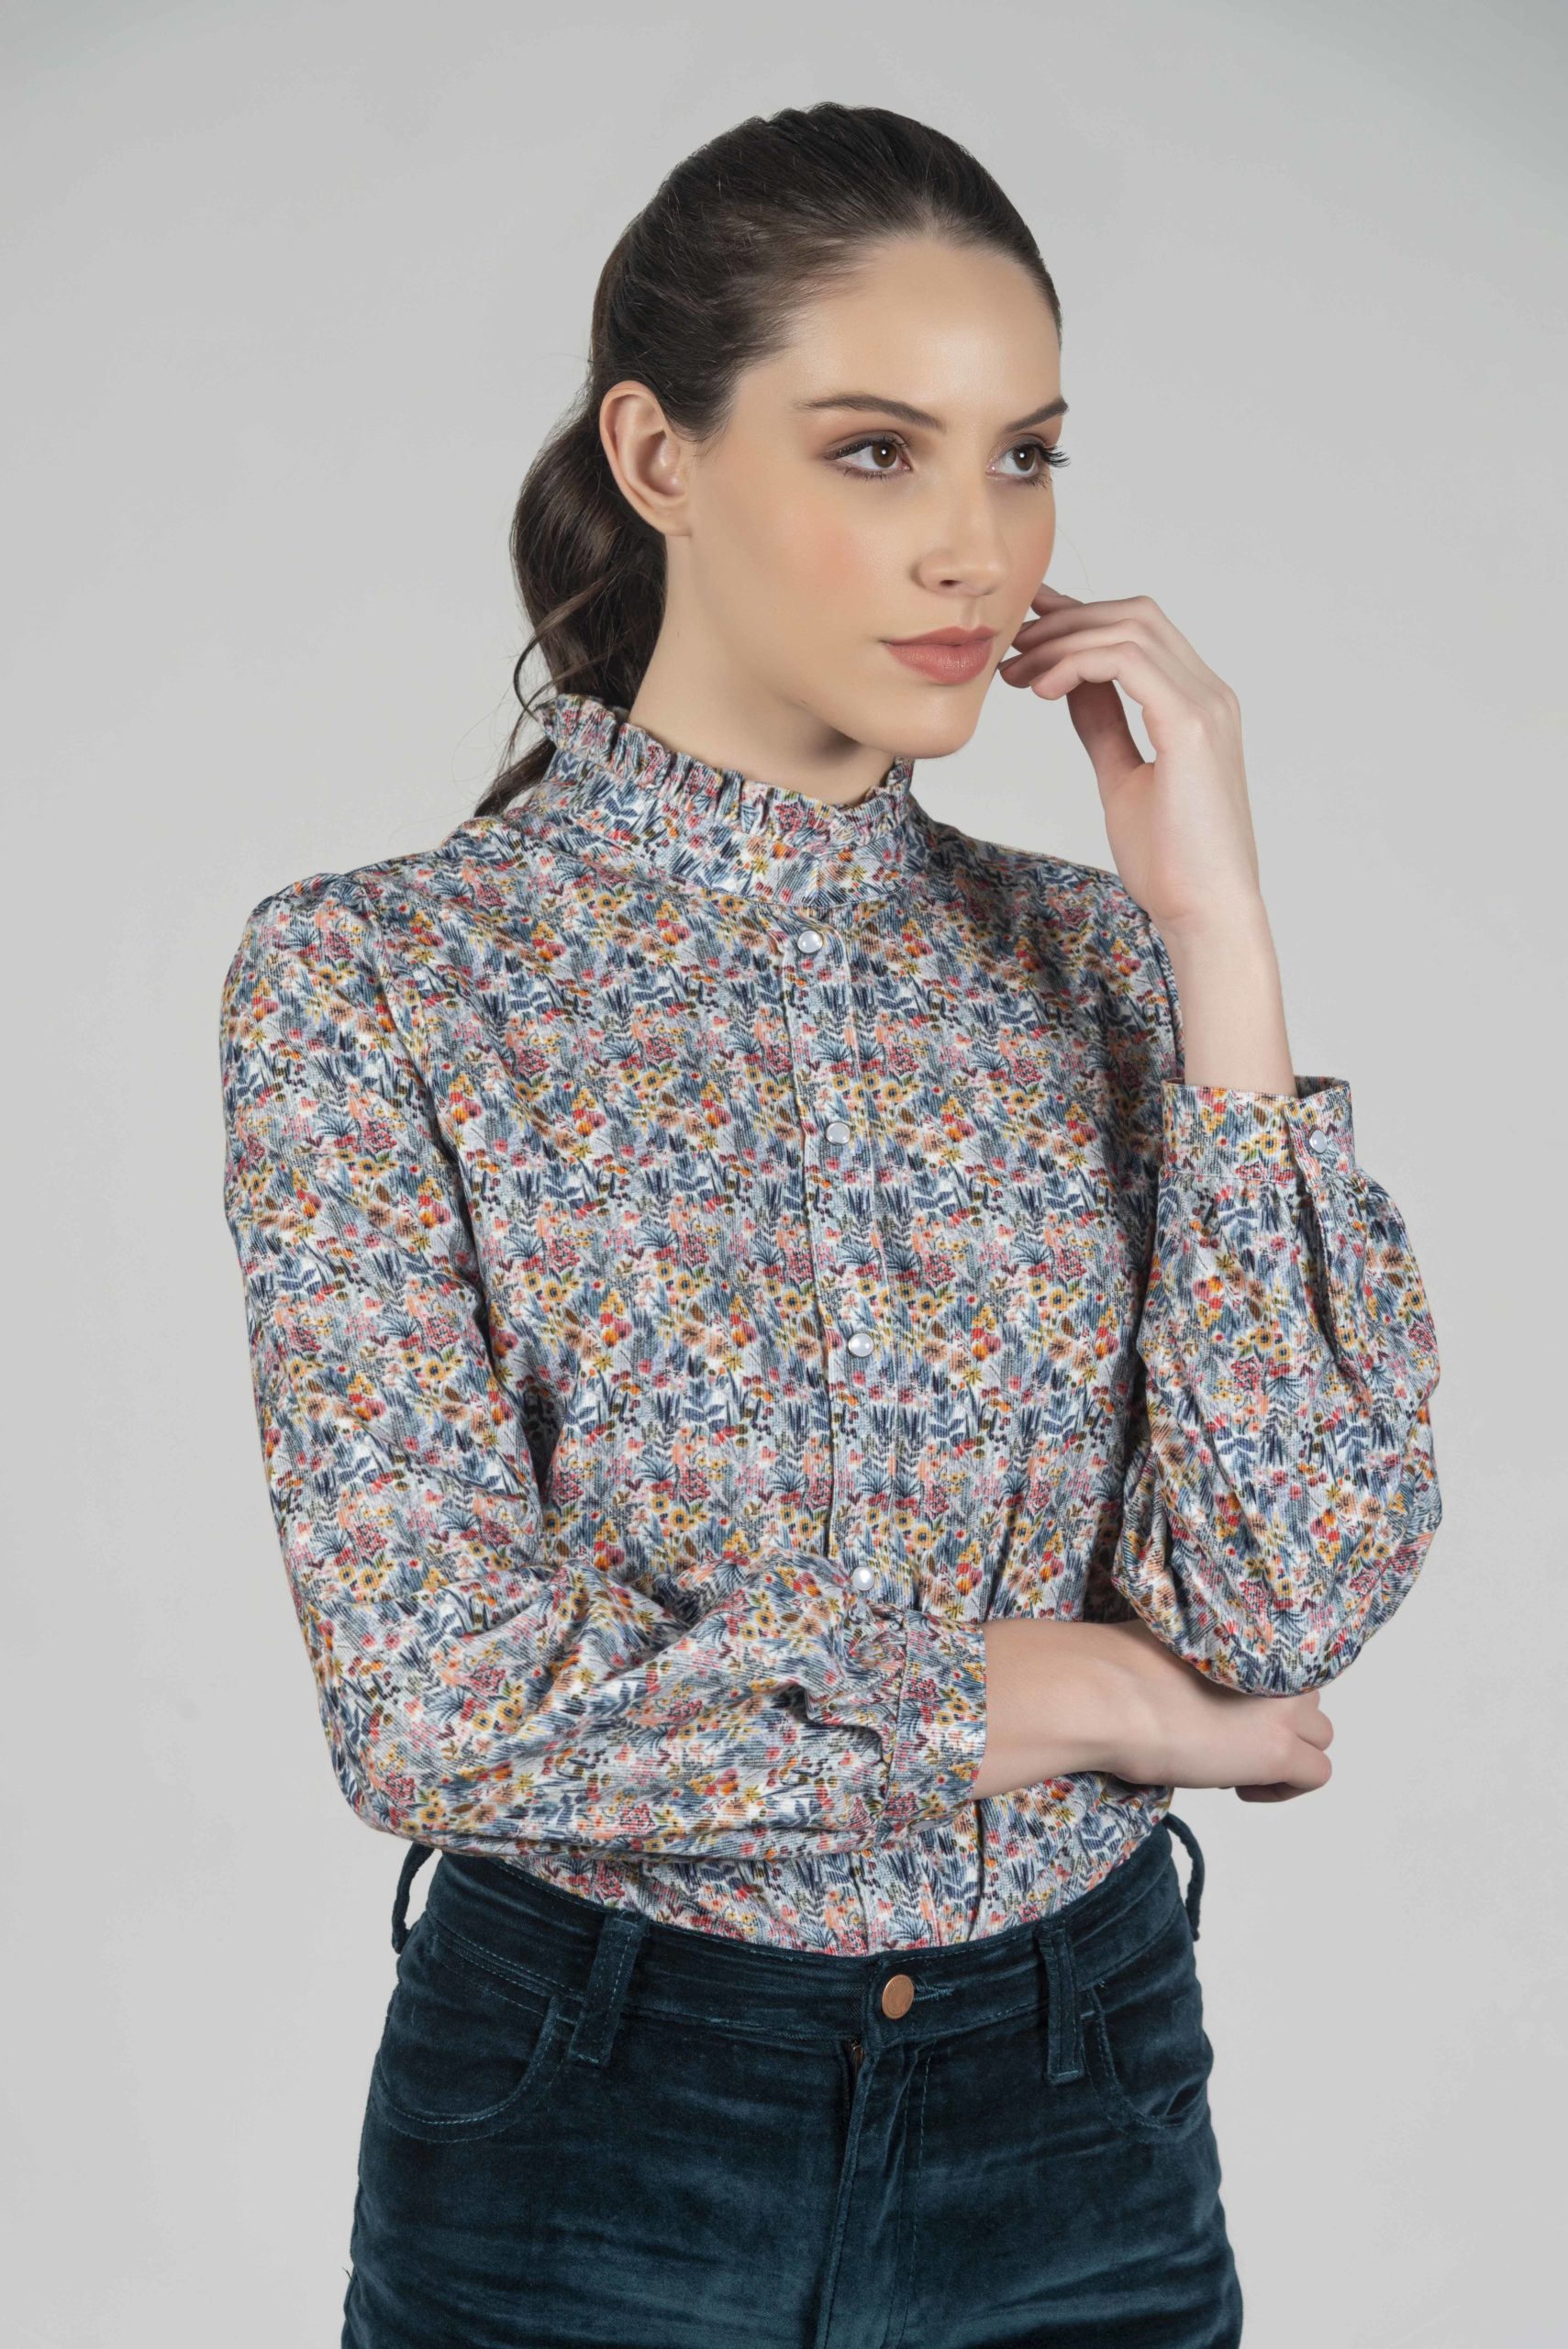 MALU Small Flowers needlecord luxury blouse